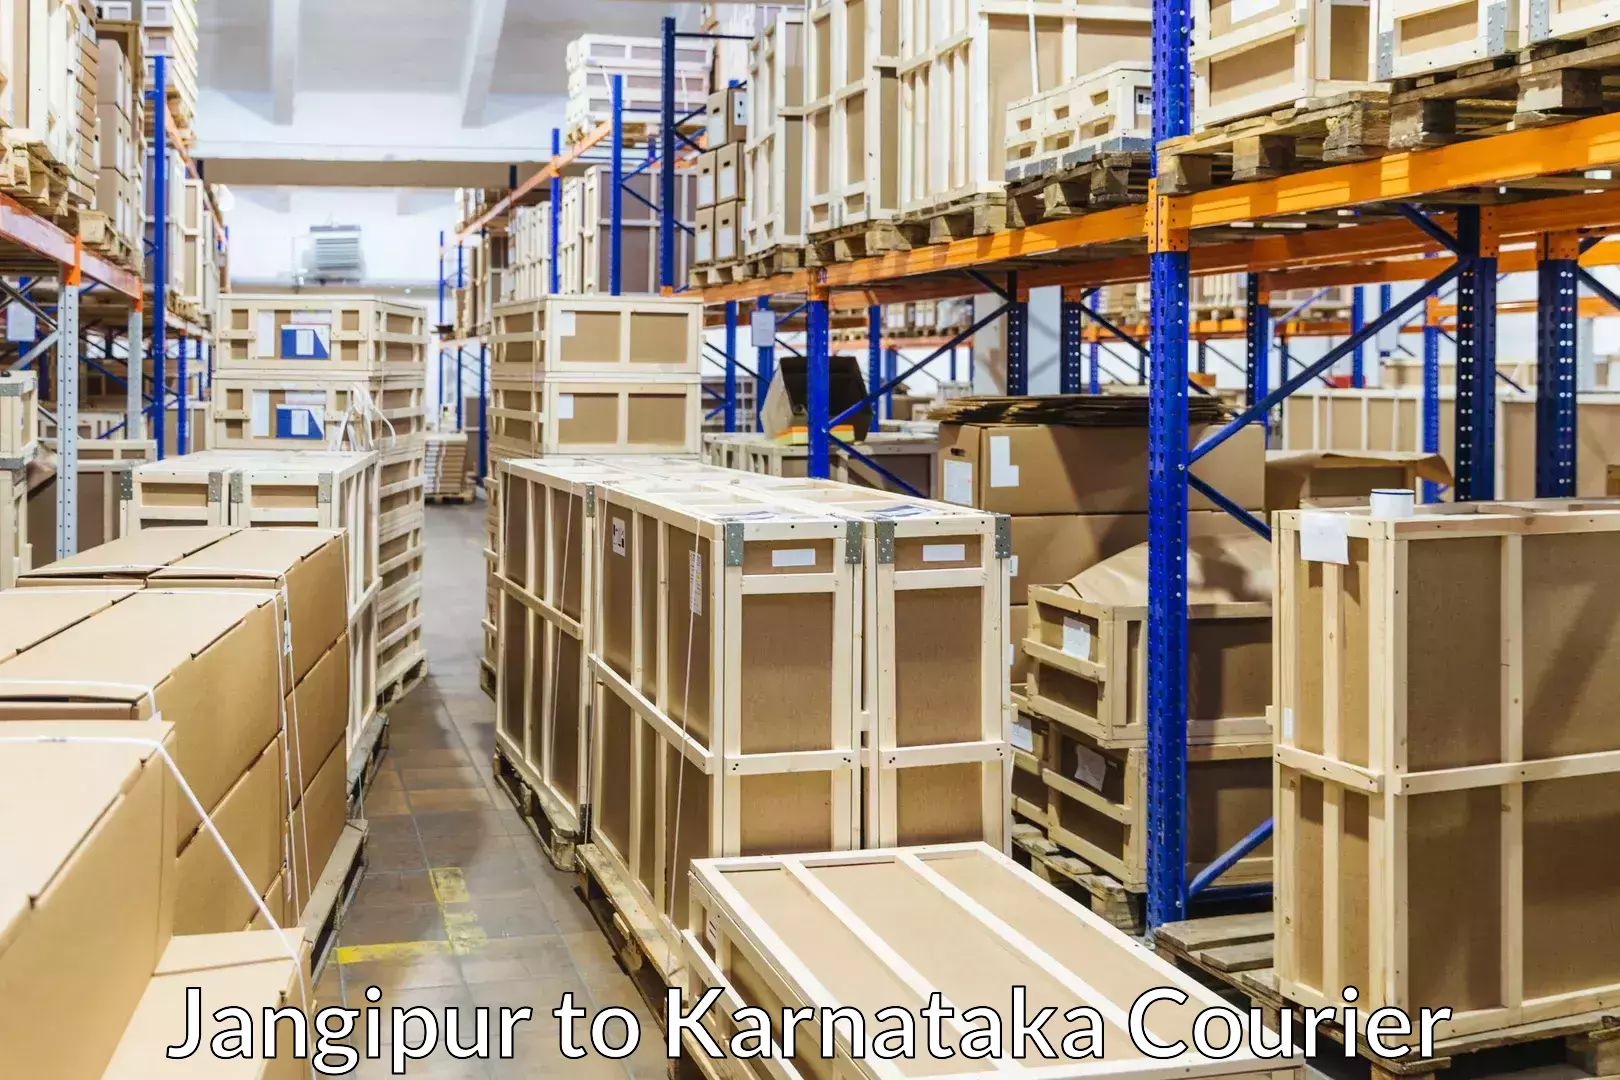 Furniture moving assistance Jangipur to Karnataka